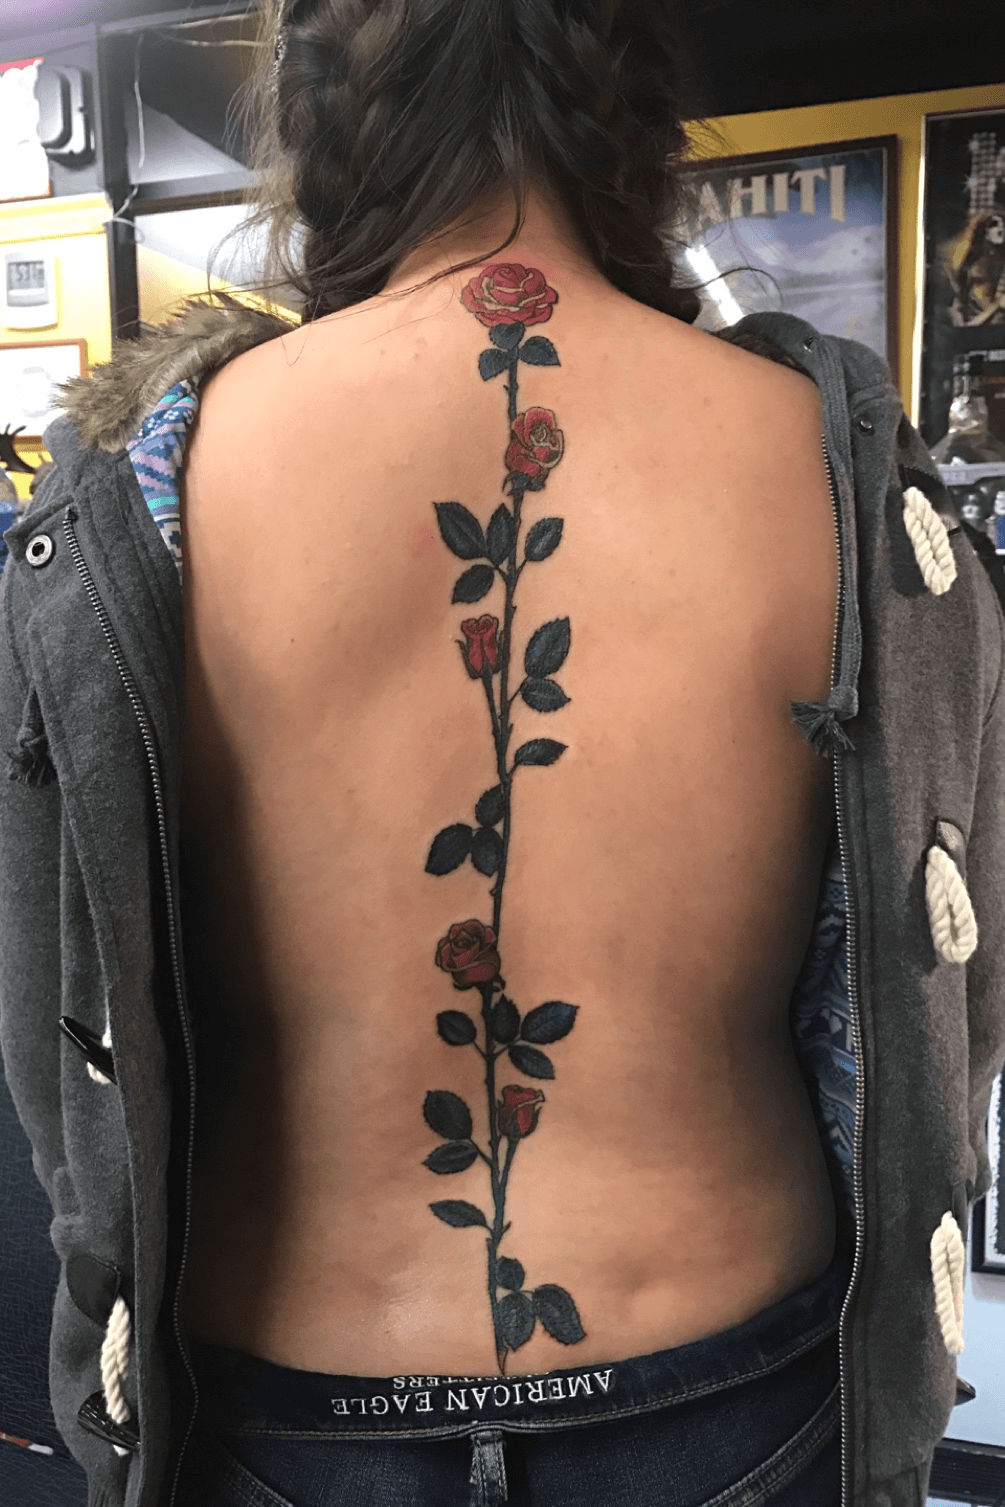 Flower backbone flowers roses  Spine tattoos for women Back tattoo  Tattoos for women